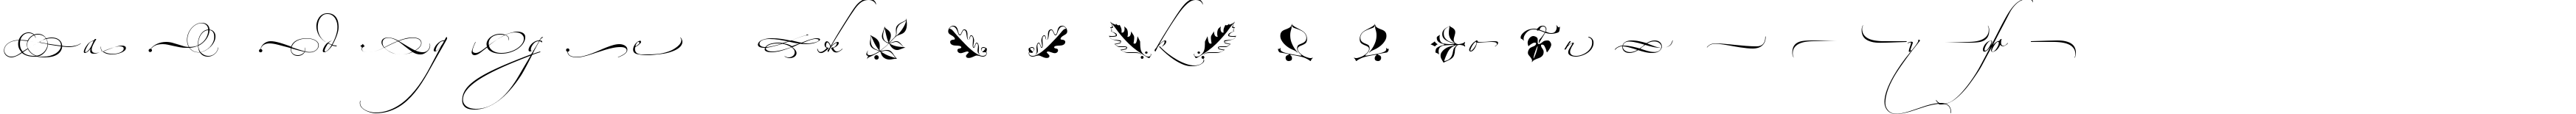 Пример написания русского алфавита шрифтом Alexandra Zeferino Ornamental